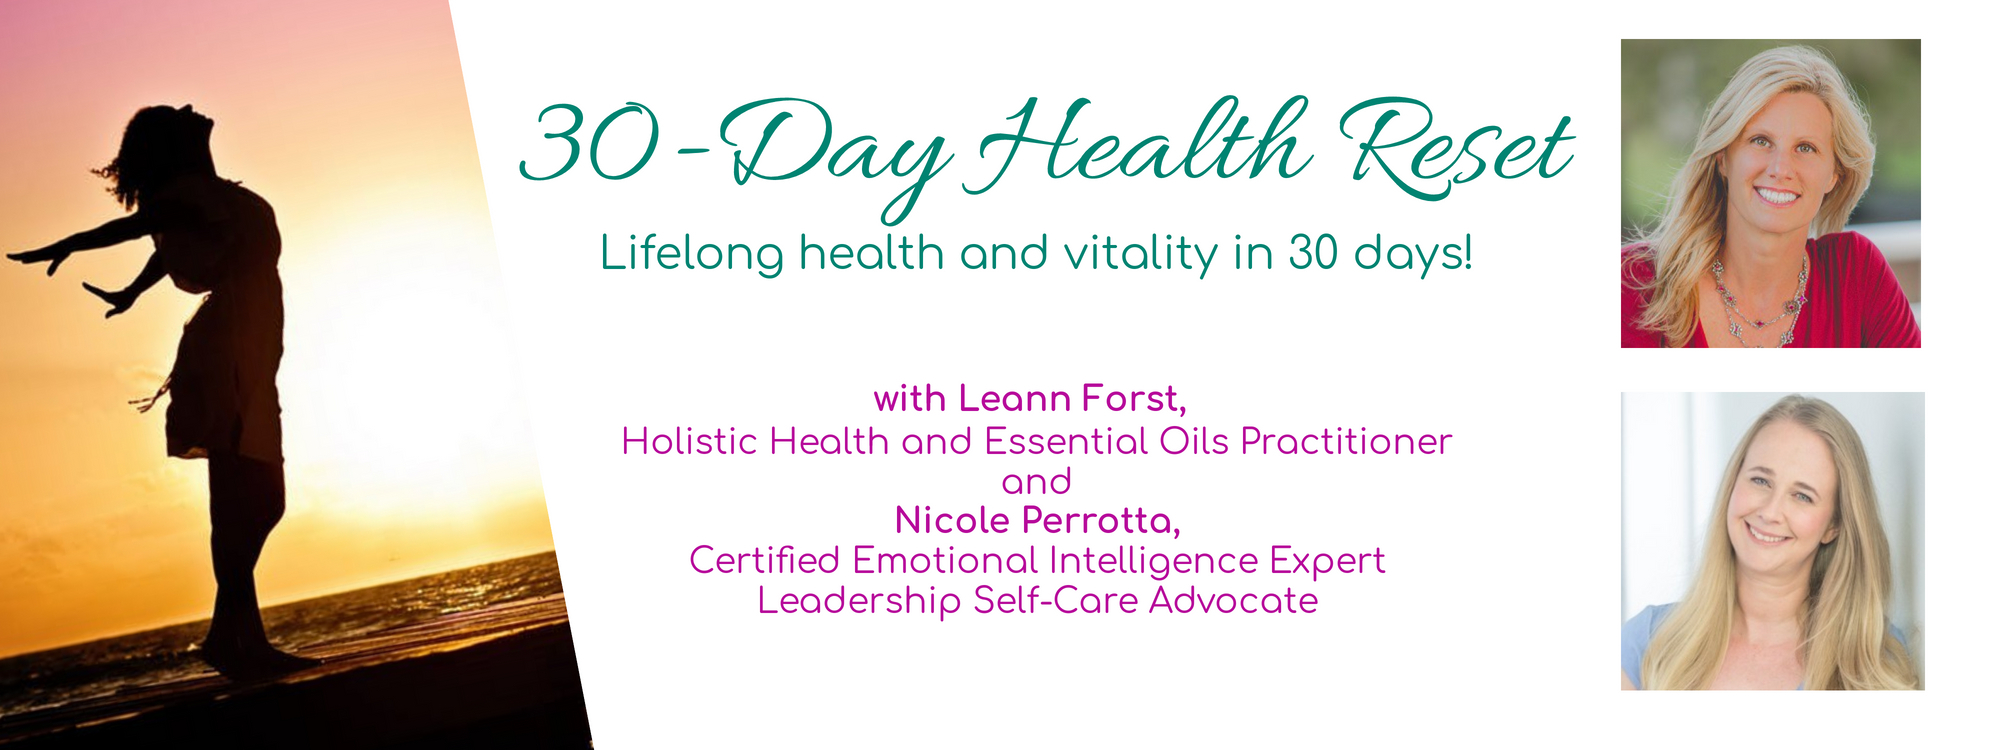 30-Day Health Reset | LeannForst.com